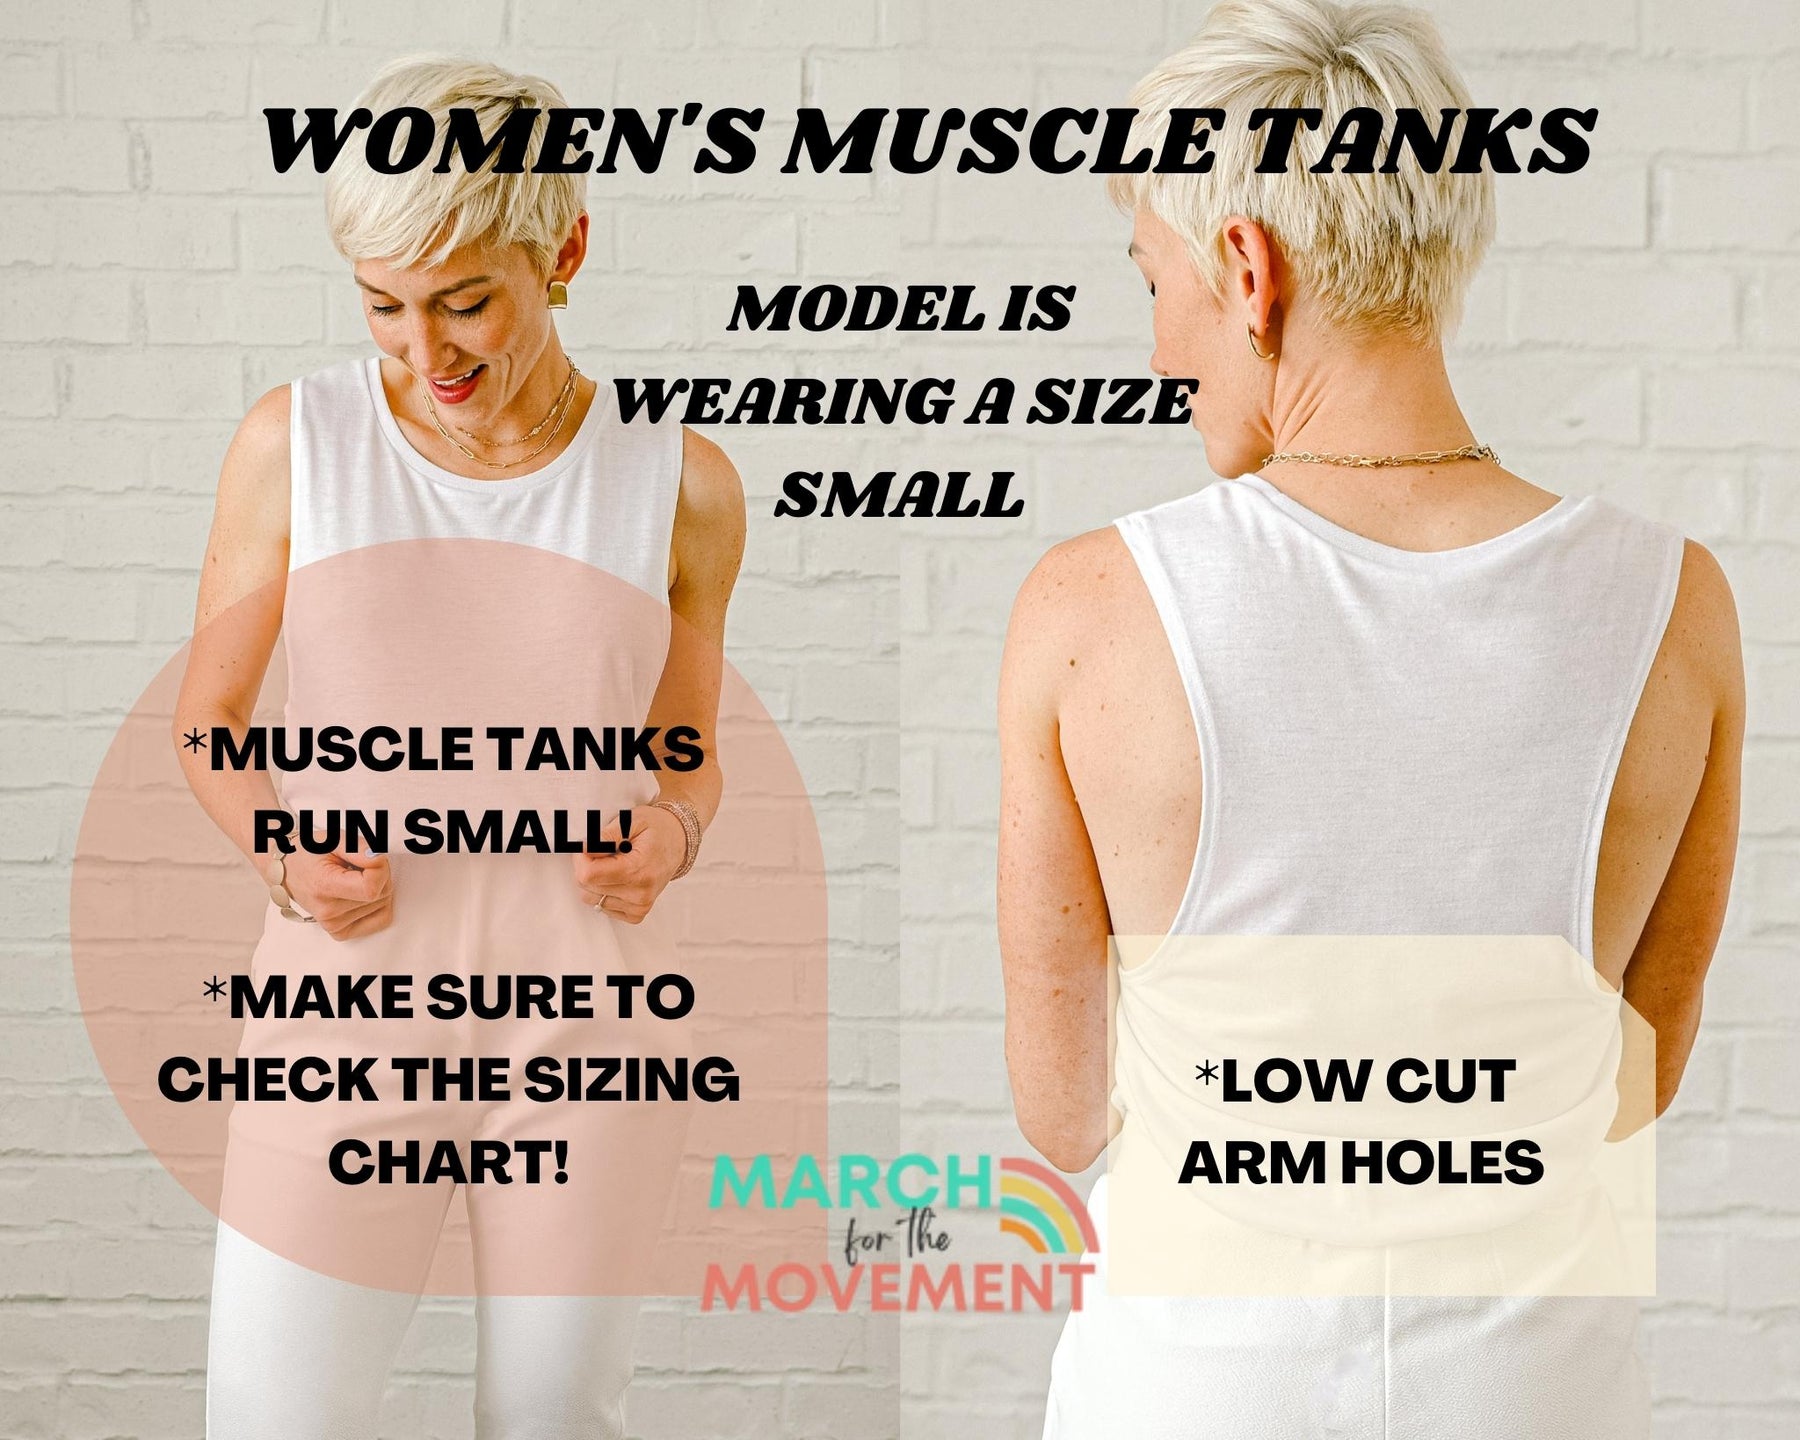 Gender Roles Are Dead Women's Muscle Tank